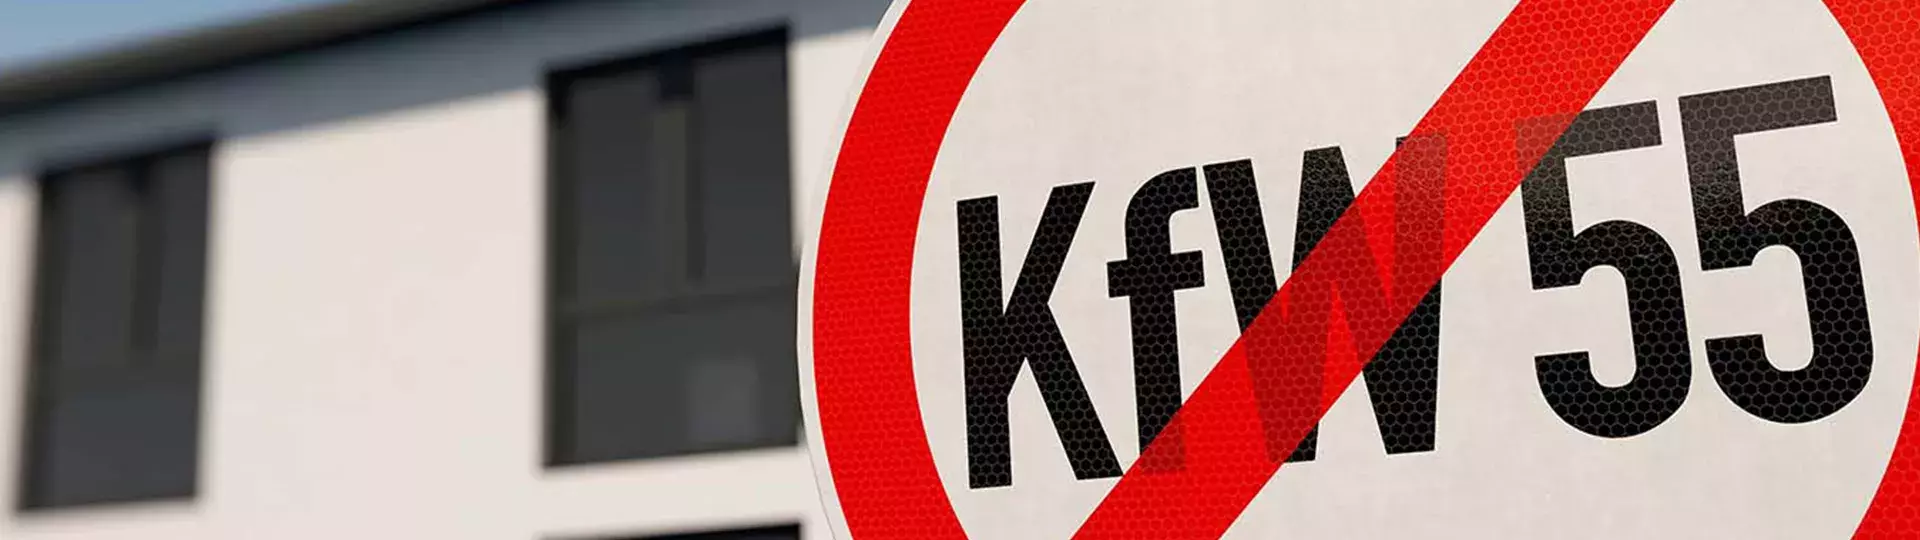 KFW-Förderung vorzeitig gestoppt